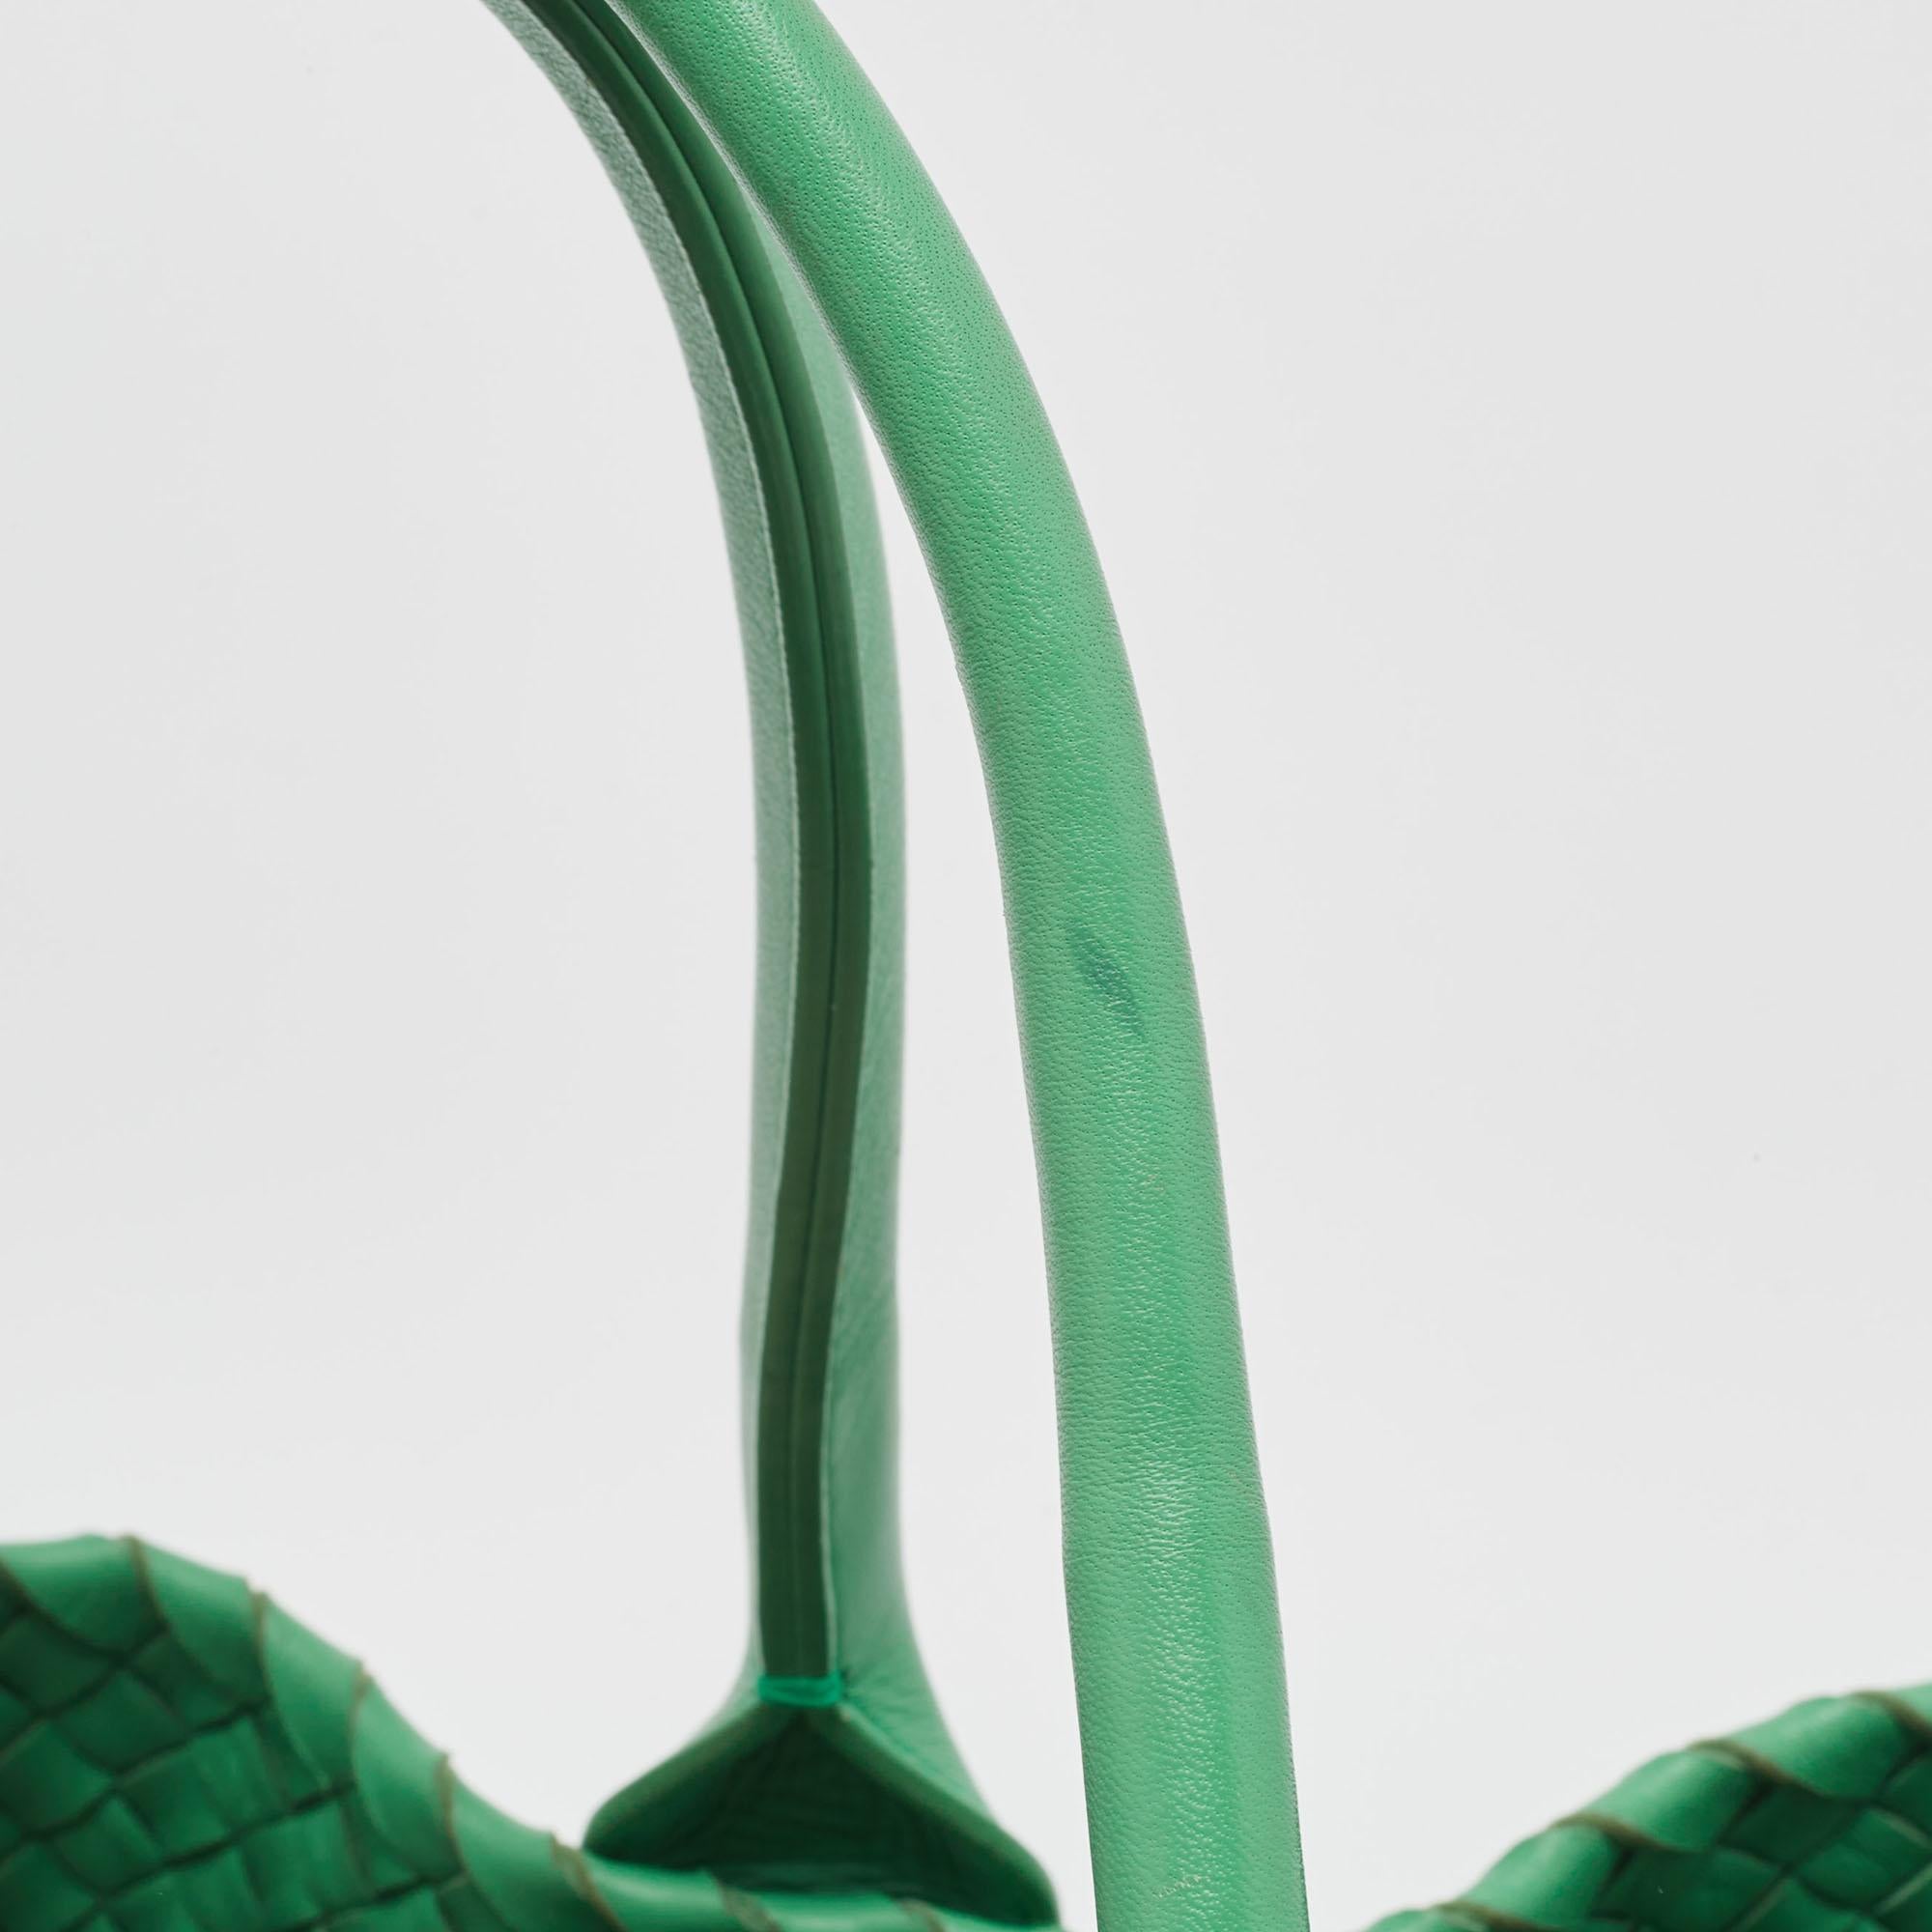 Bottega Veneta Green Intrecciato Leather  Limited Edition 0147/1000 Cabat Tote For Sale 10